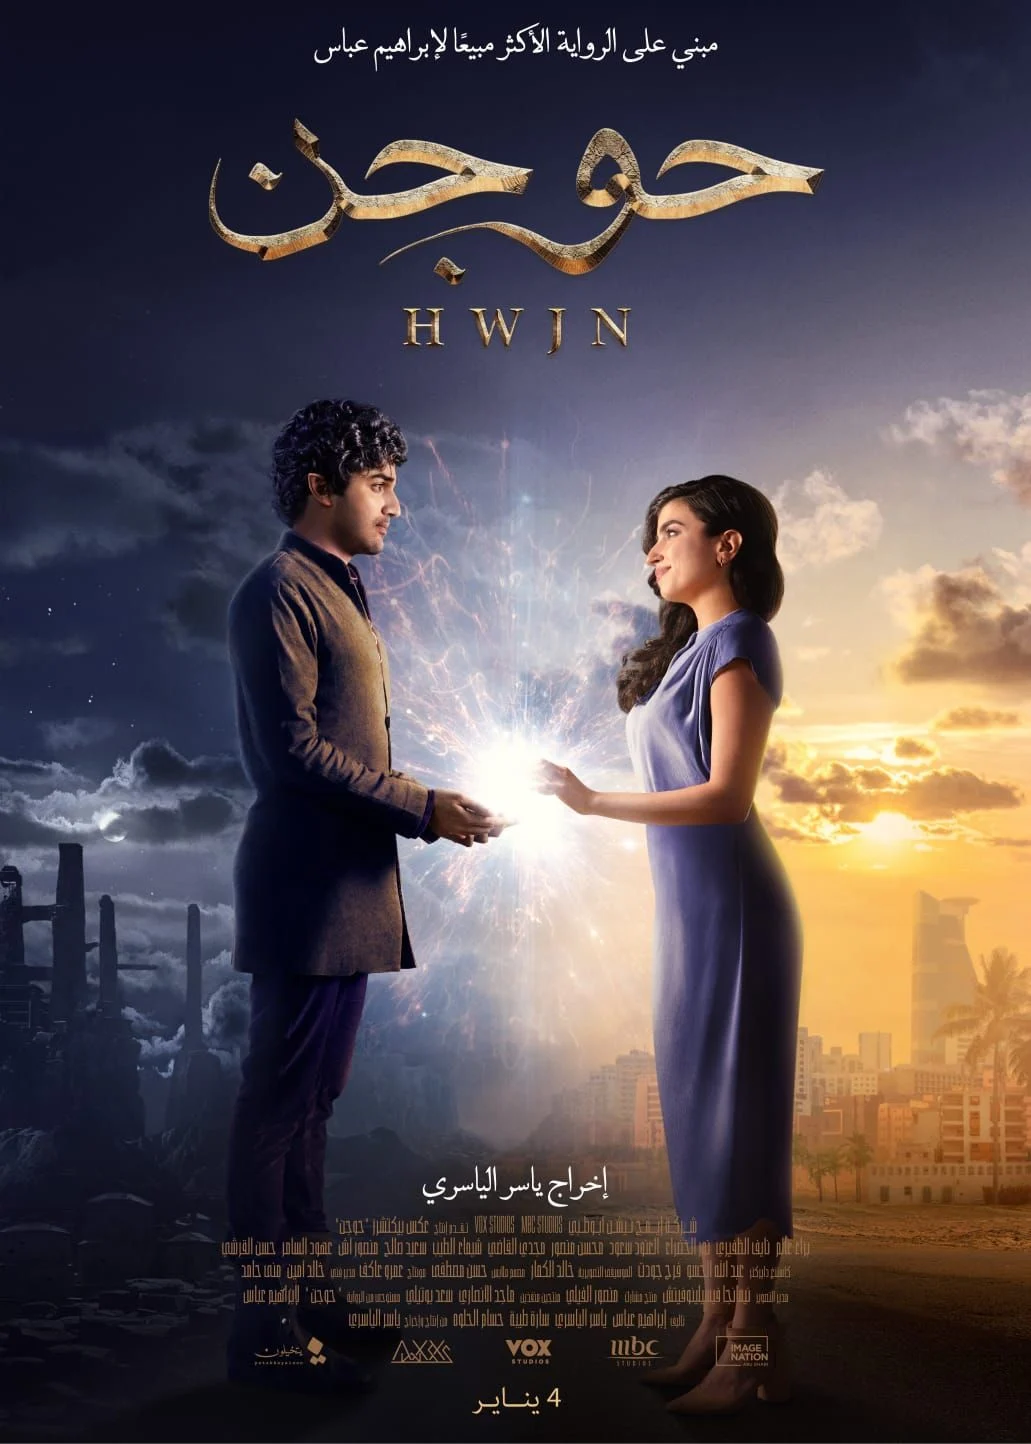 عرض أول إعلان رسمي لفيلم الخيال السعودي الرومانسي HWJN